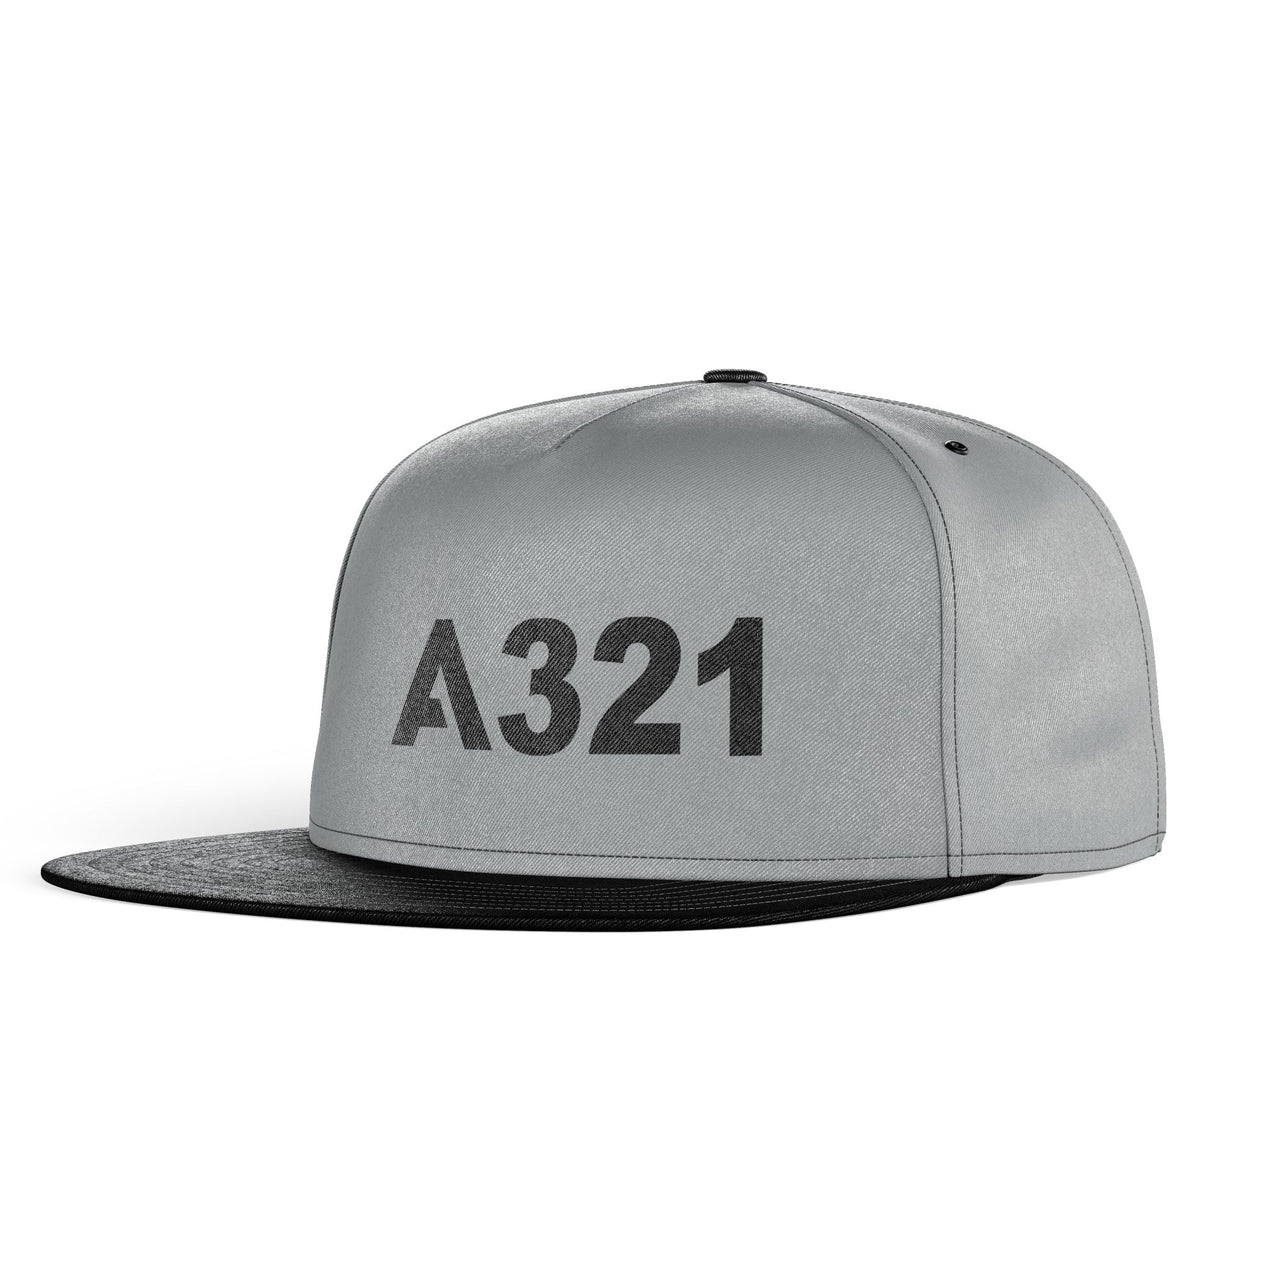 A321 Flat Text Designed Snapback Caps & Hats